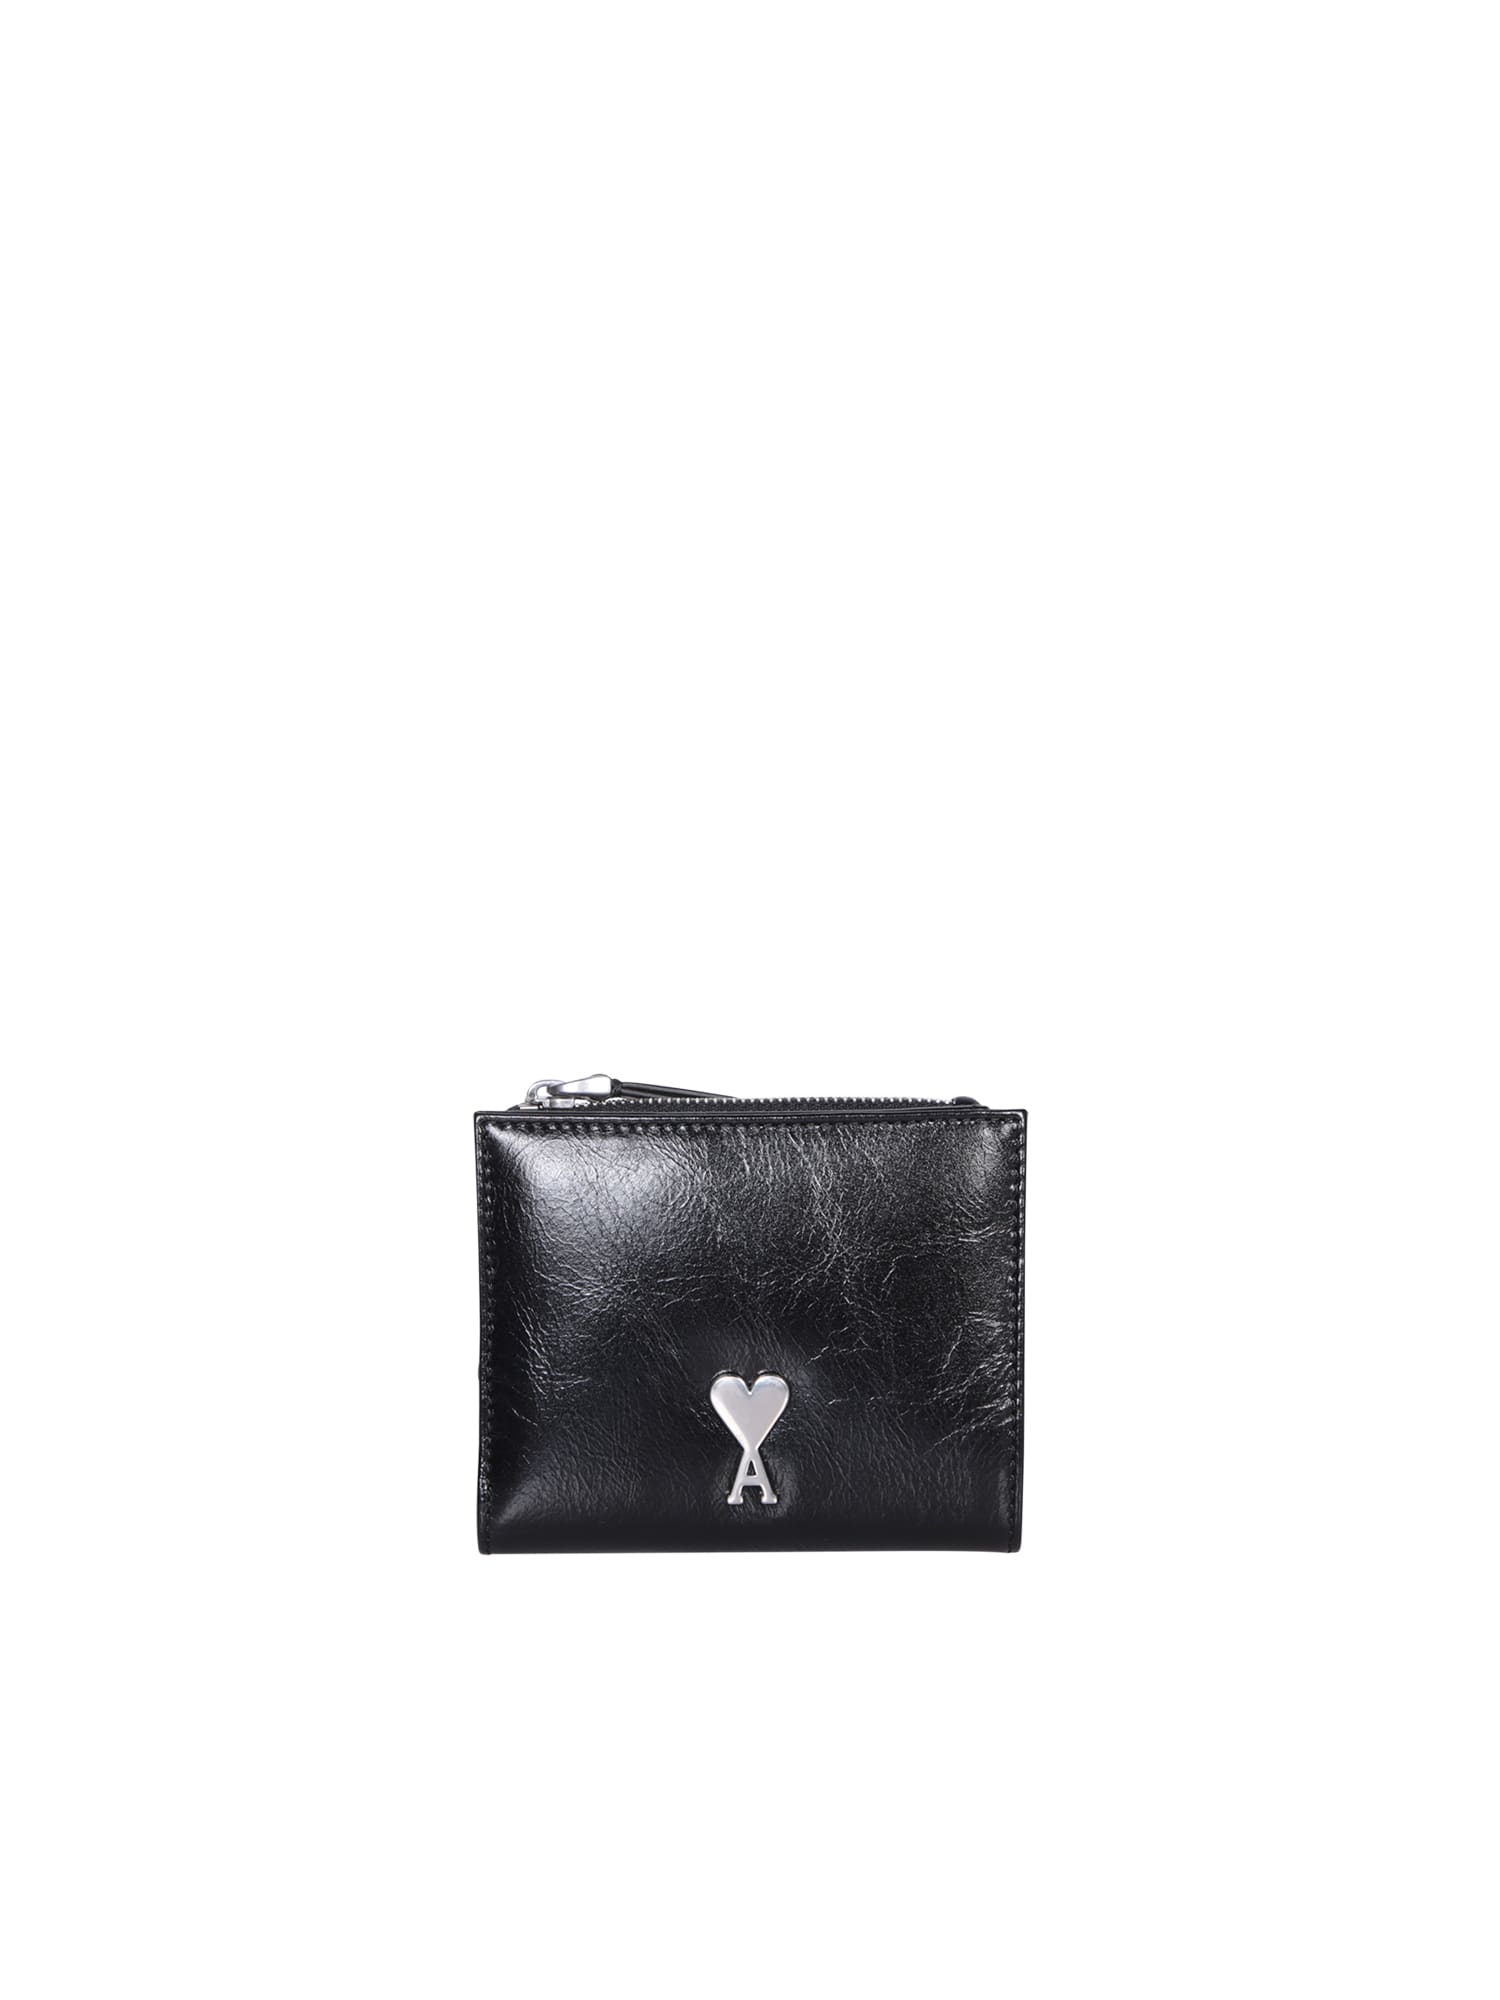 Ami Alexandre Mattiussi Ami Paris Voulez Black Leather Wallet